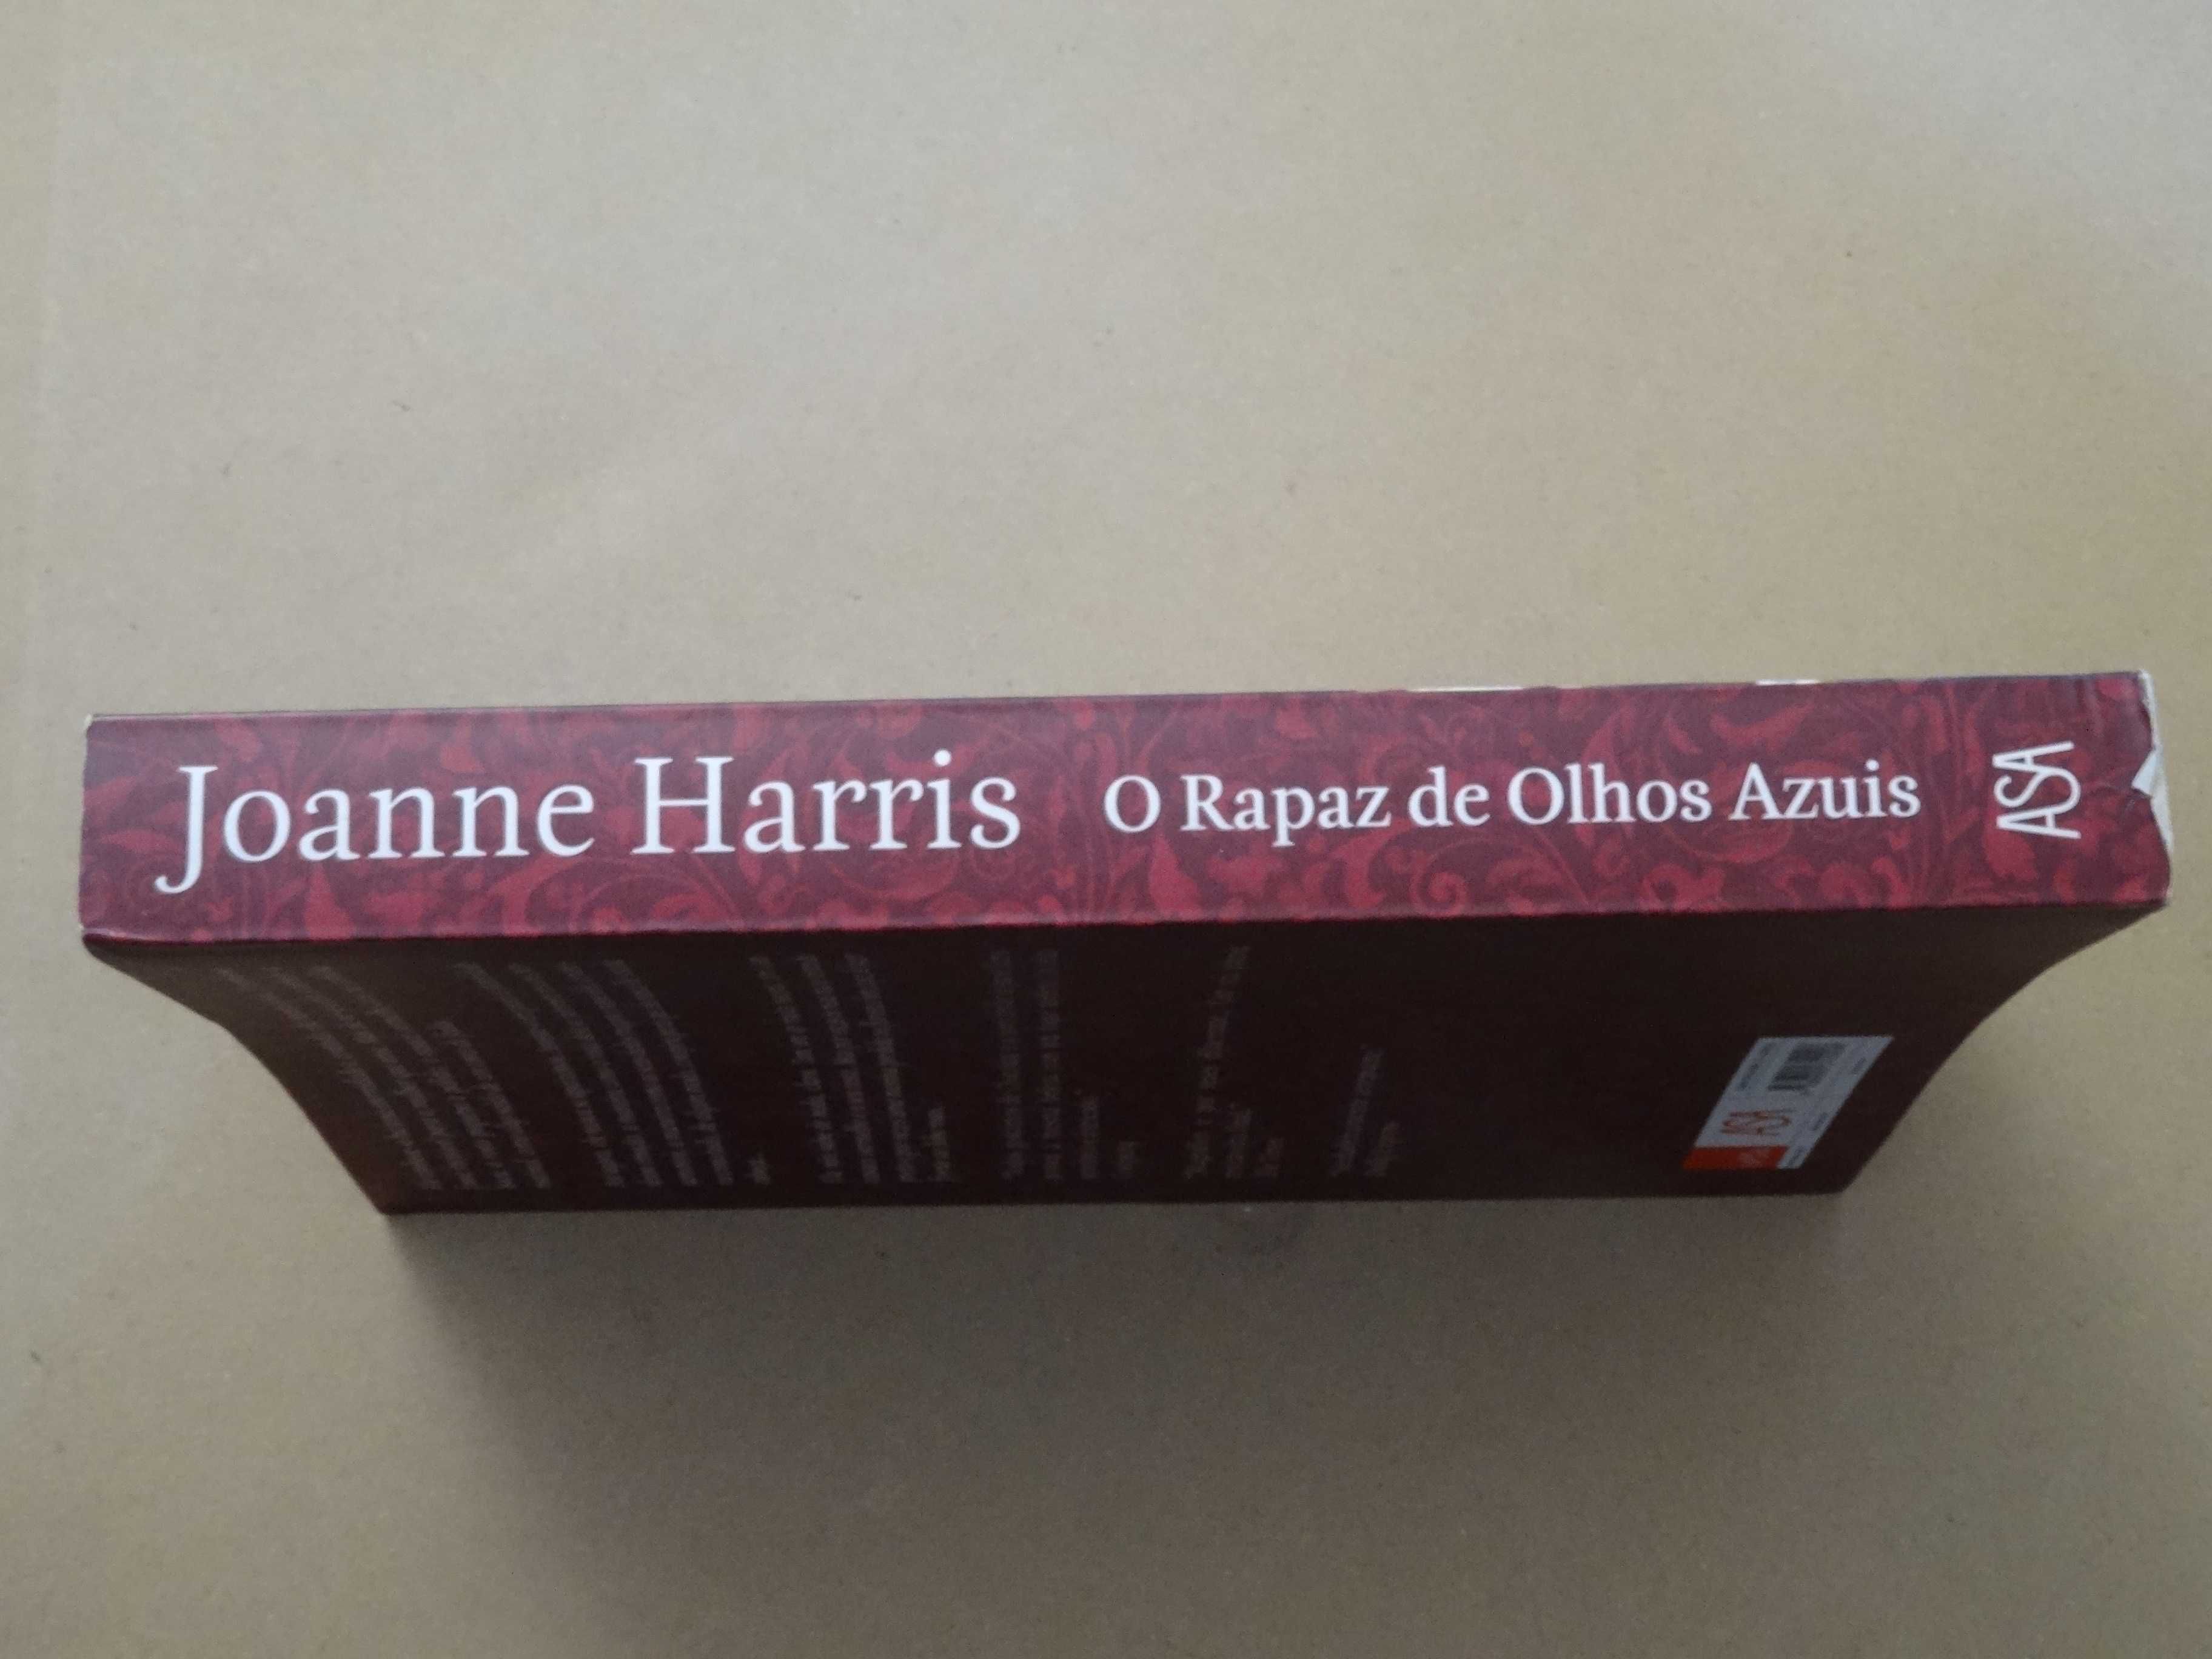 O Rapaz de Olhos Azuis de Joanne Harris - 1ª Edição